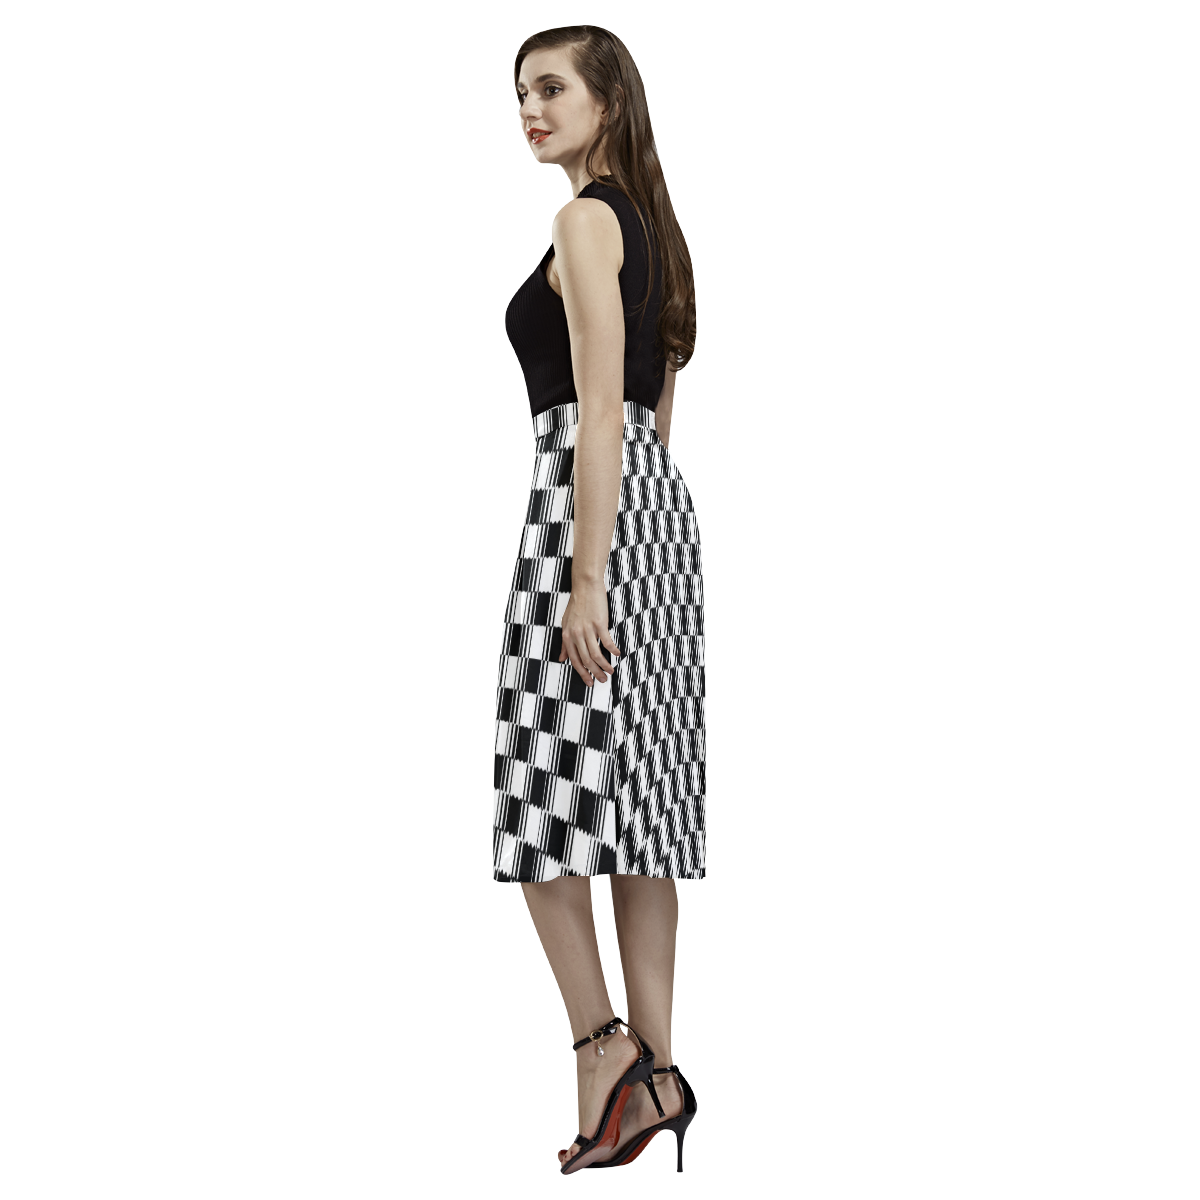 BLACK AND WHITE TILED Aoede Crepe Skirt (Model D16)